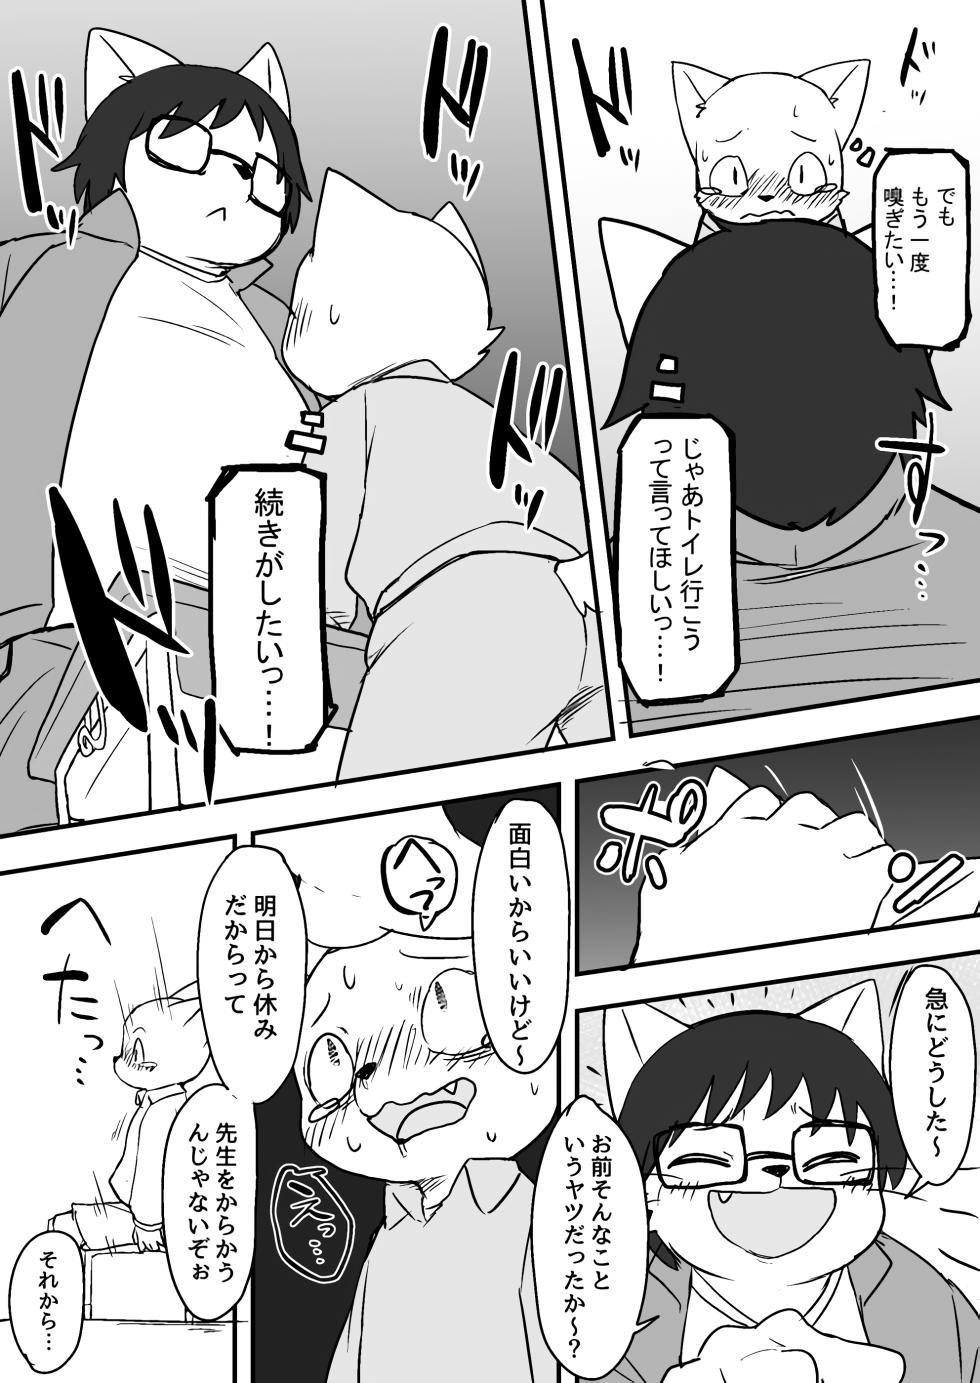 Manmosu Marimo - Sensei Story #1 (Raw) - Page 12